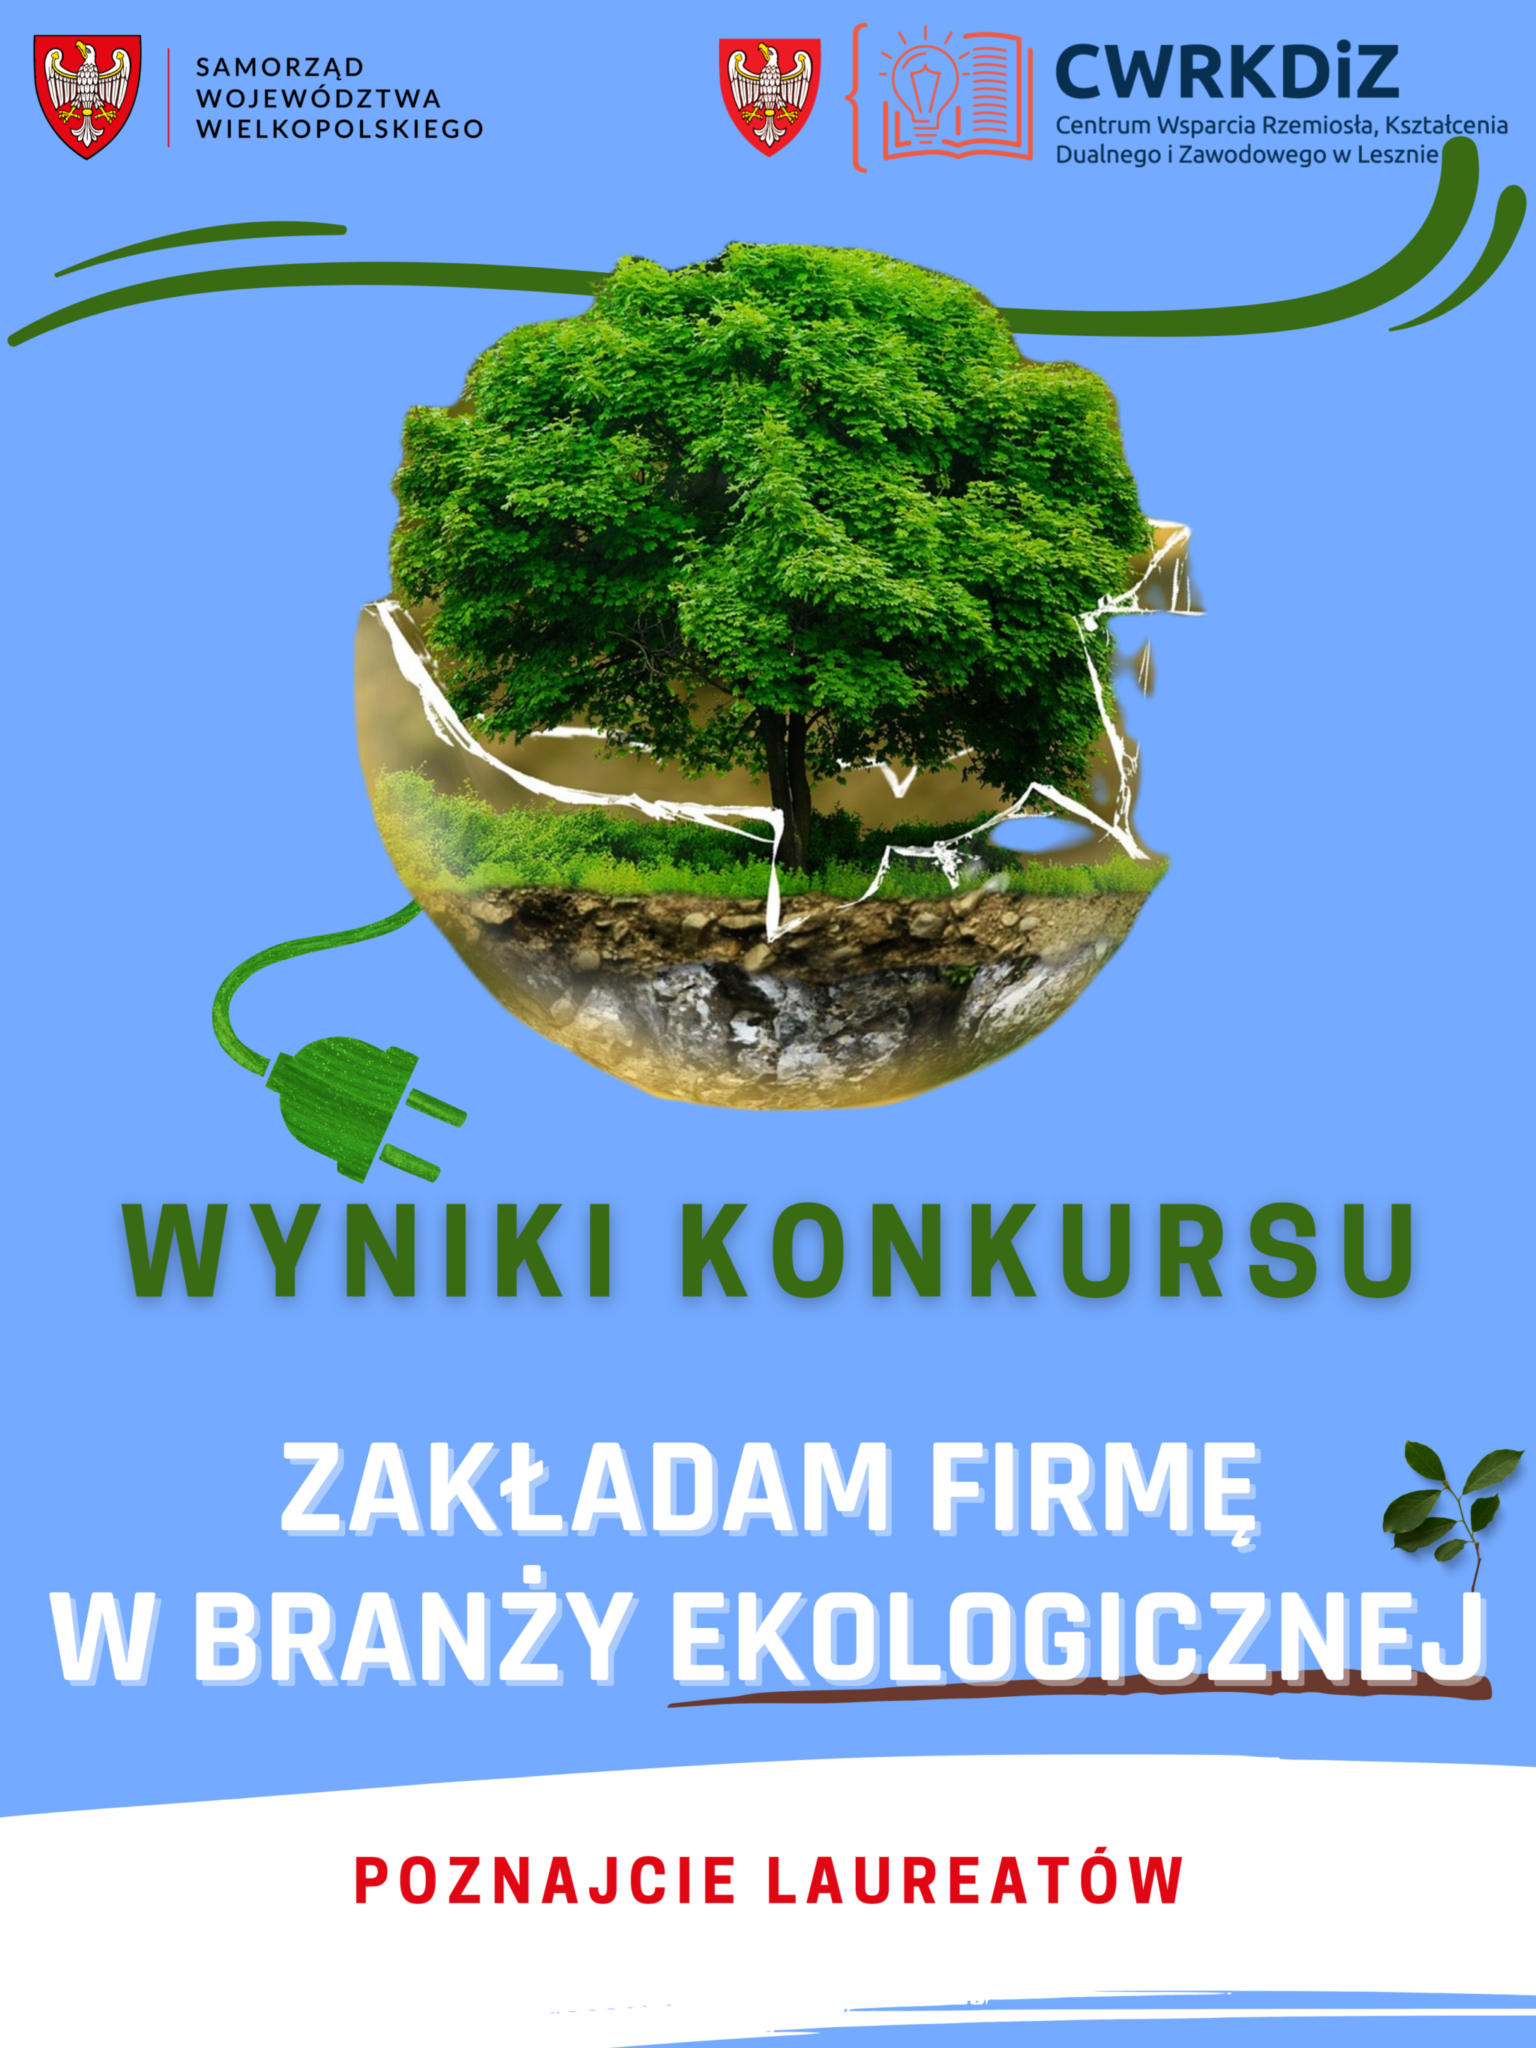 Plakat przedstawia zielone, rozłożyste drzewo na niebieskim tle wpięte zieloną wtyczką do nazwy "wyniki konkursu".